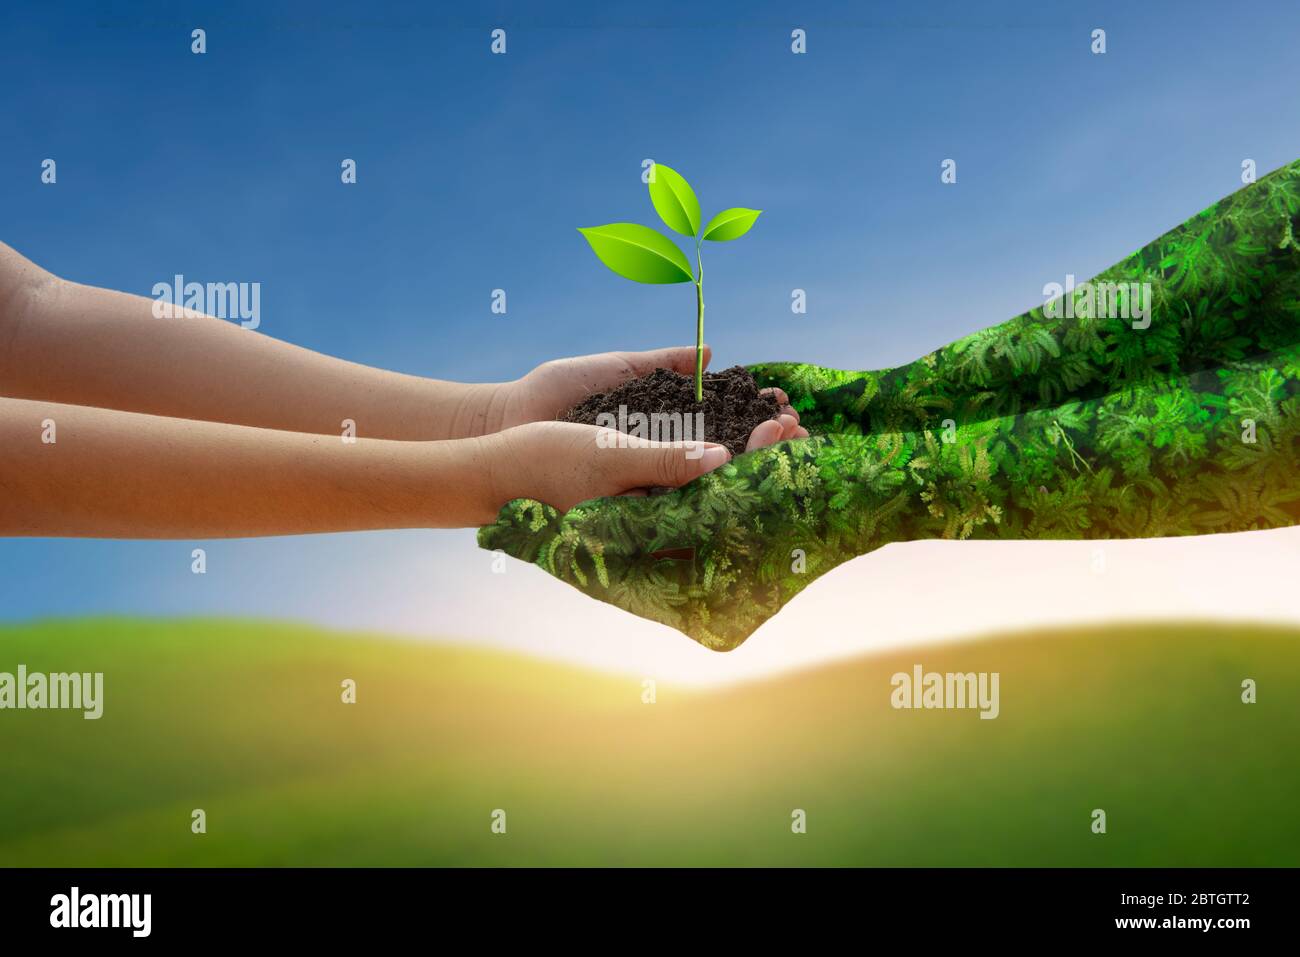 Umwelt Earth Day Hände von der Natur. Mädchen Hände halten Bäume wachsen auf grünen Berg und blauen Himmel Hintergrund. Ökologie und Naturkonzept. Stockfoto